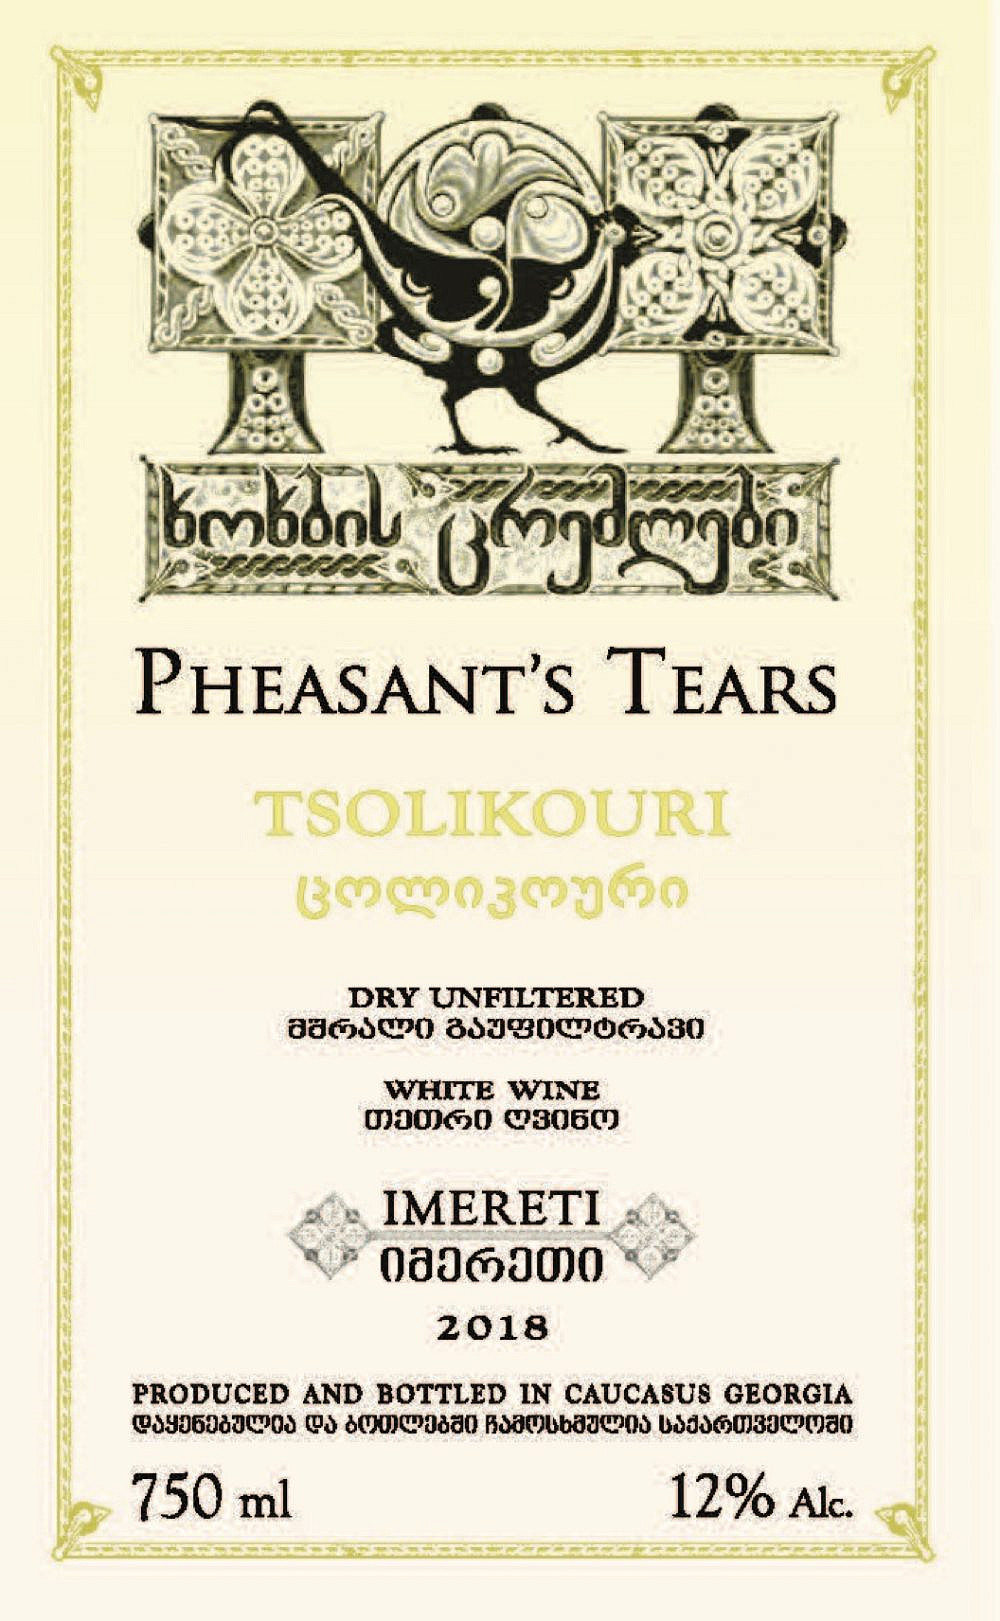  שימור זנים ושיטות יצור מסורתיות Pheasant's Tears Tsolikauri 2019 (יבוא: עסיס)